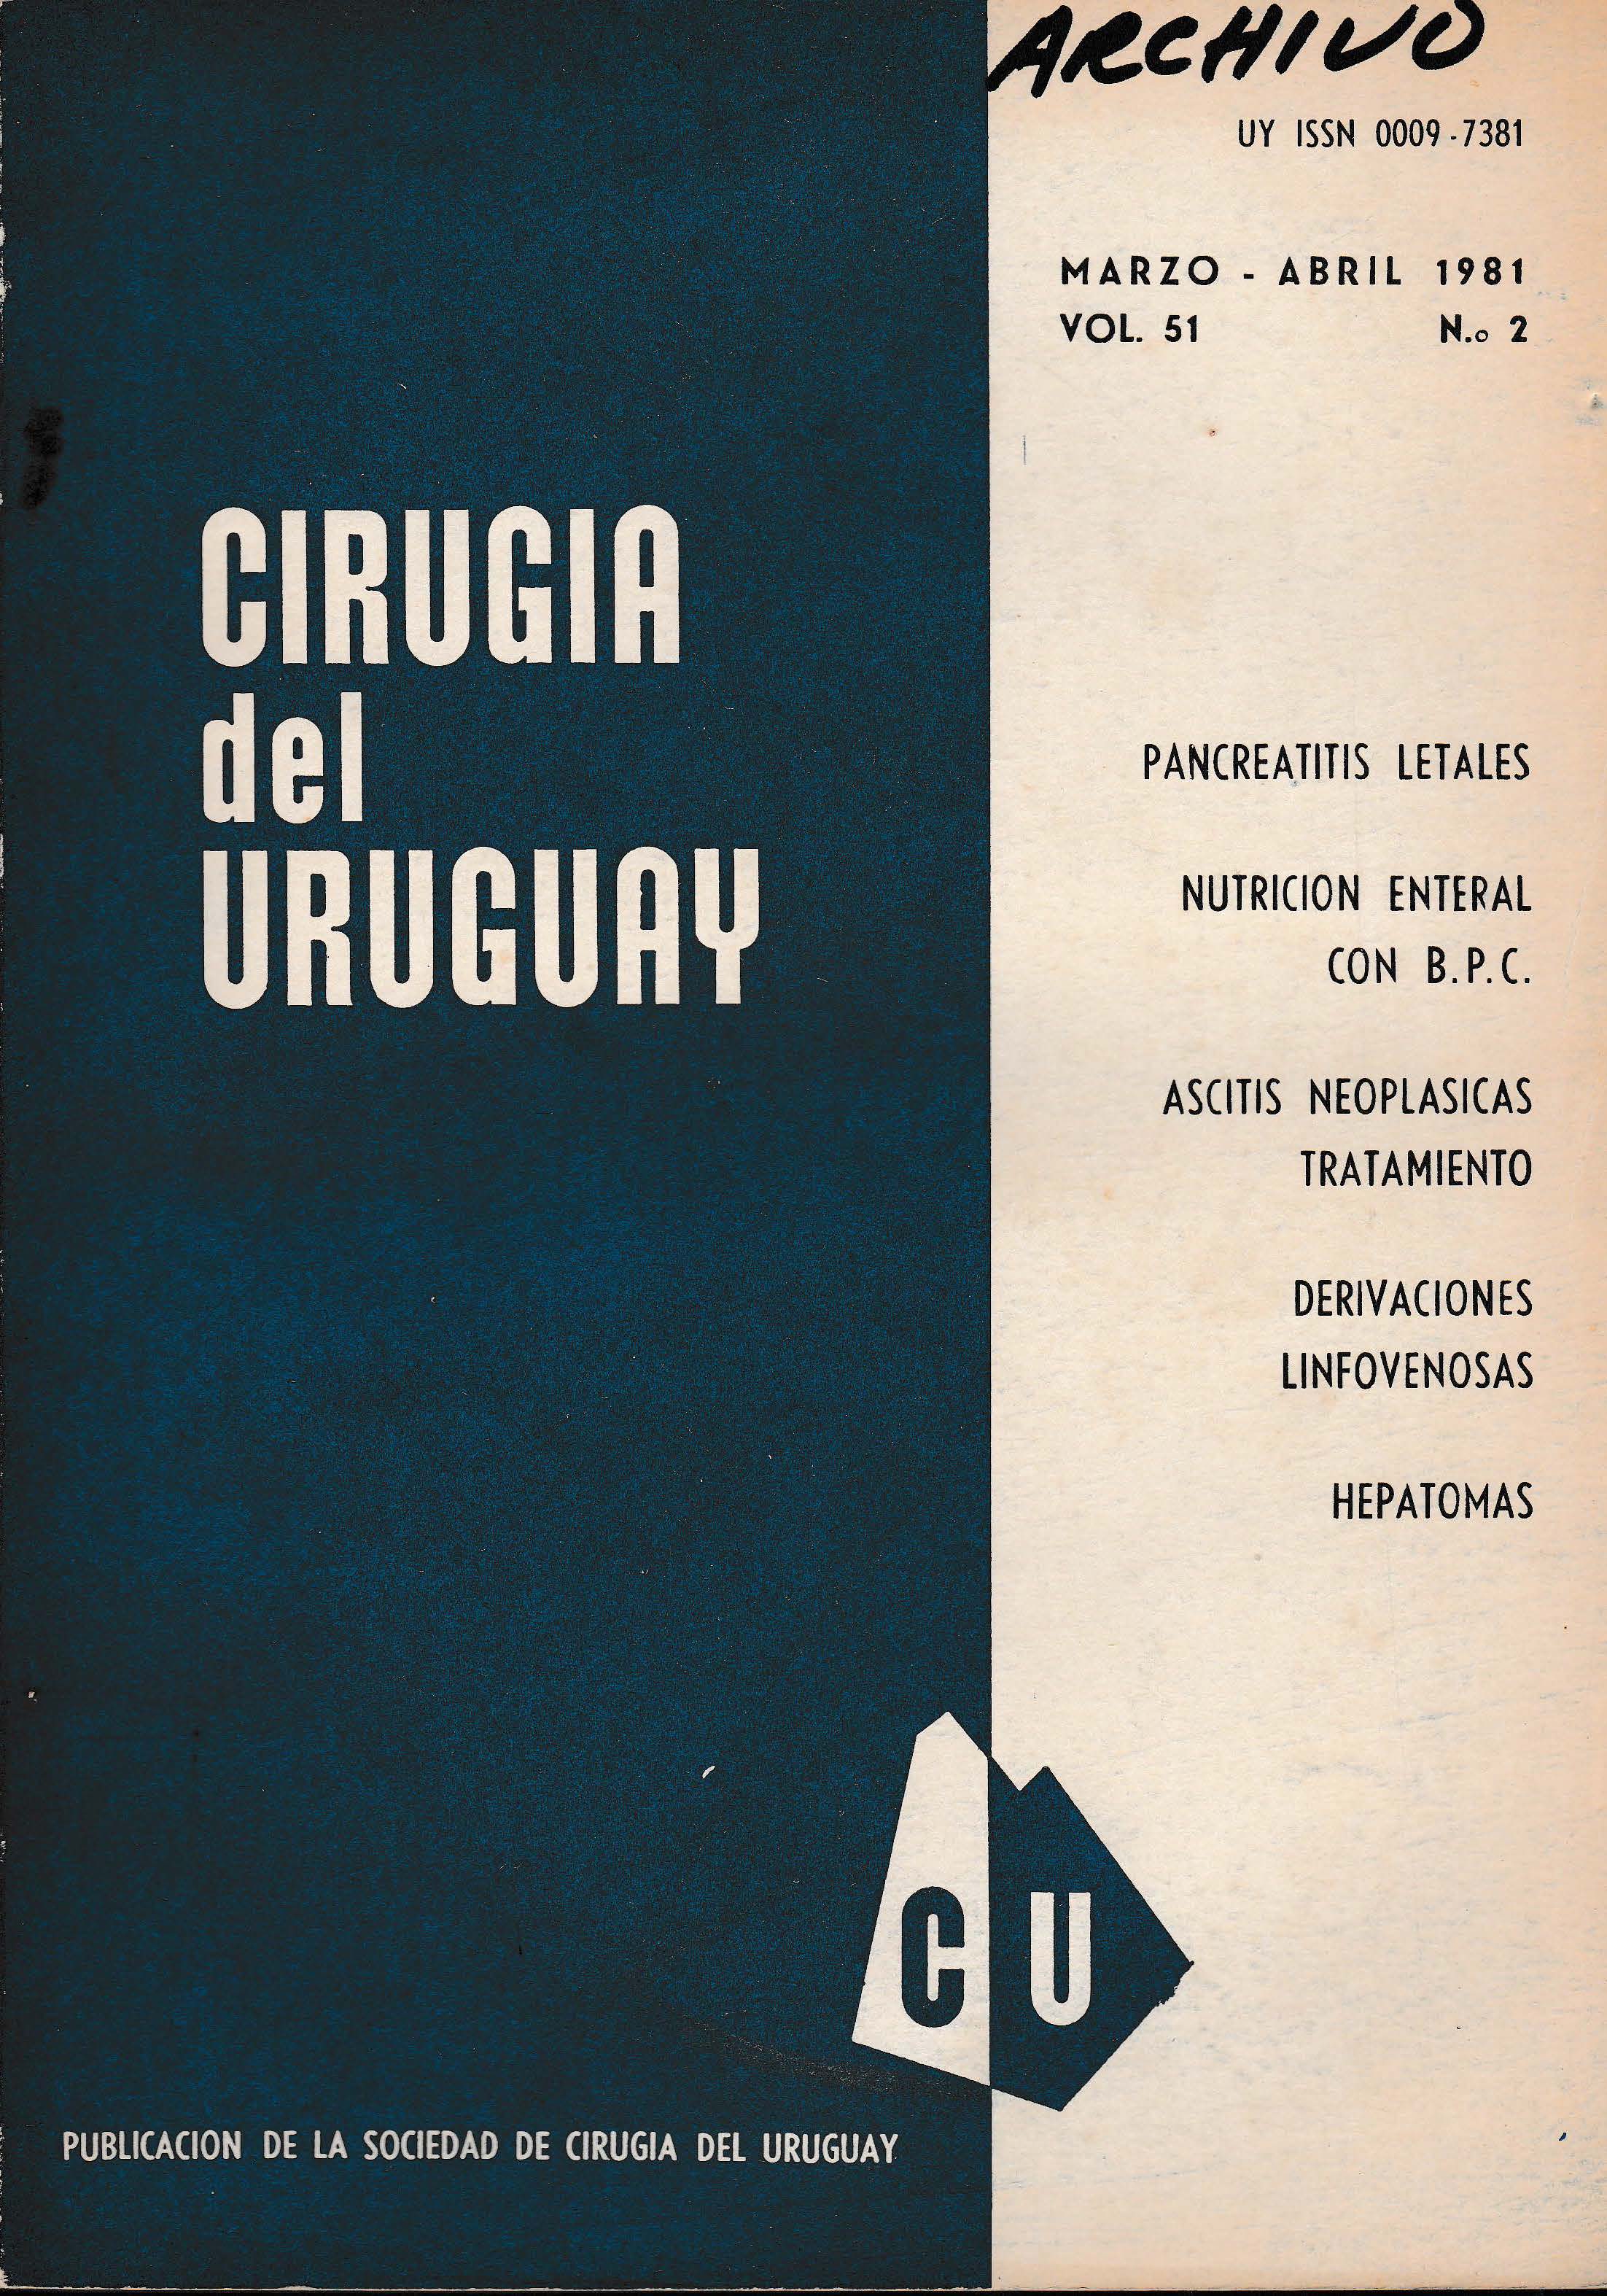 					Ver Vol. 51 Núm. 2 (1981): Cirugía del Uruguay
				